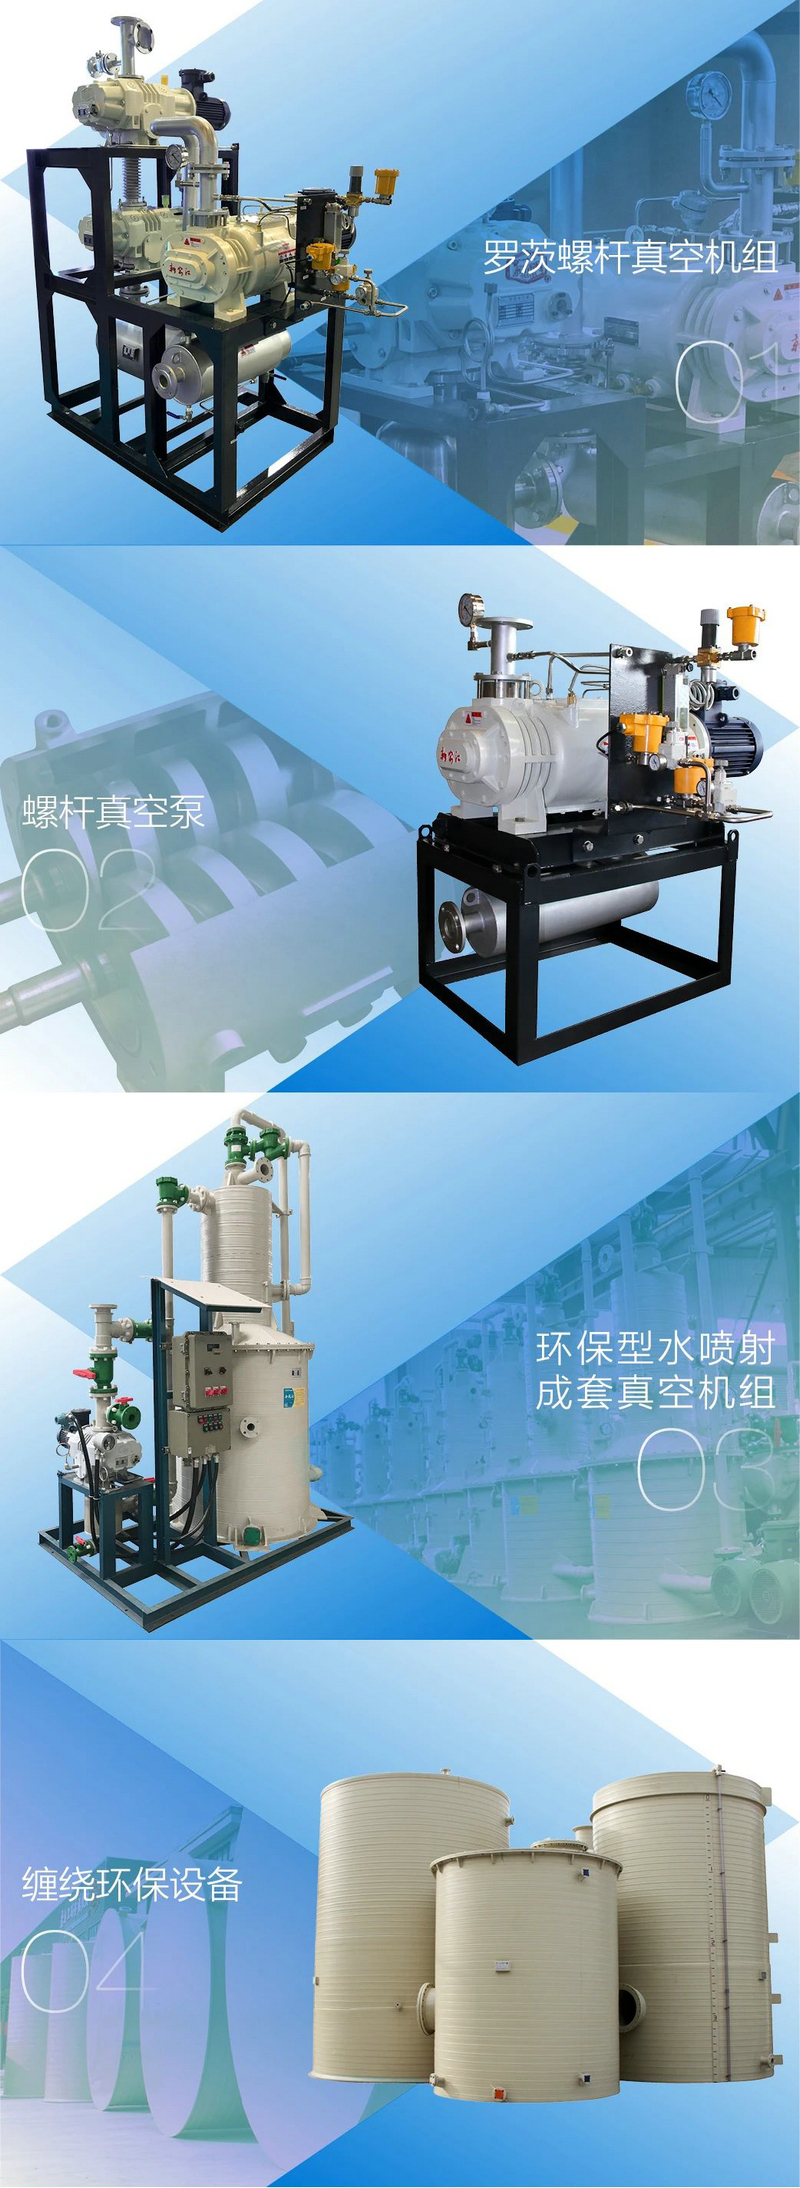 杭州新安江工業泵有限公司榮獲上市公司新農化工優秀供應商稱號 (3)